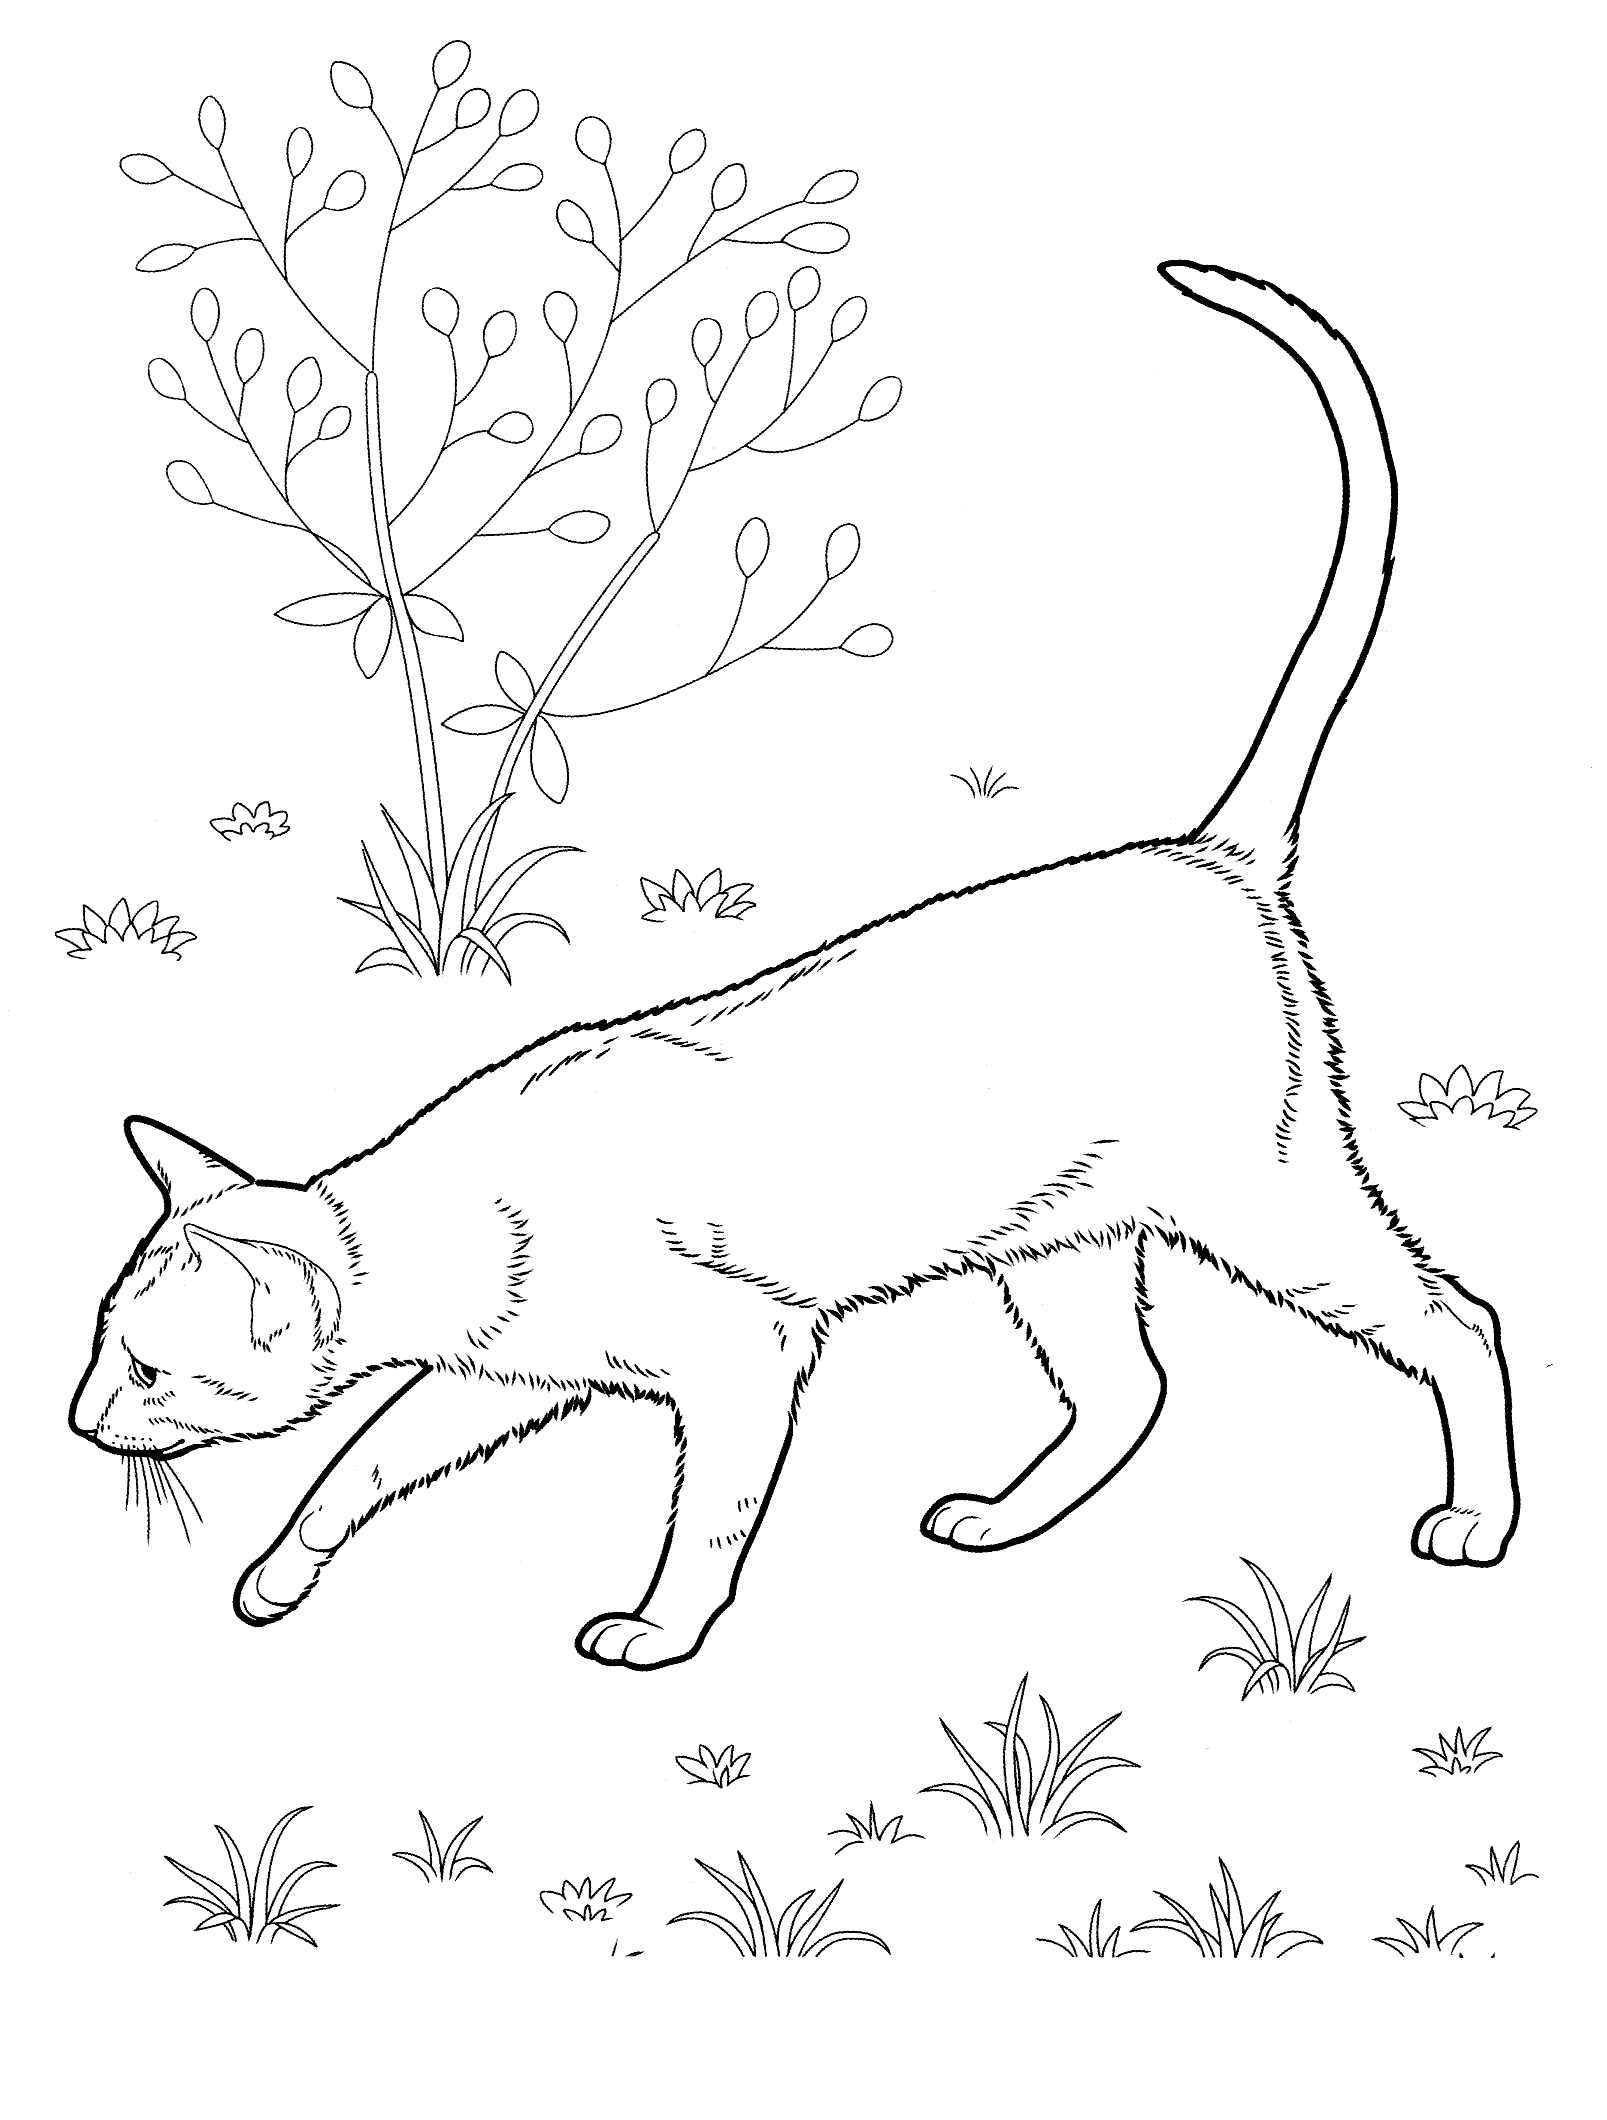 Kolorowanka kot idzie po łące obok drzewka i węszy w trawie